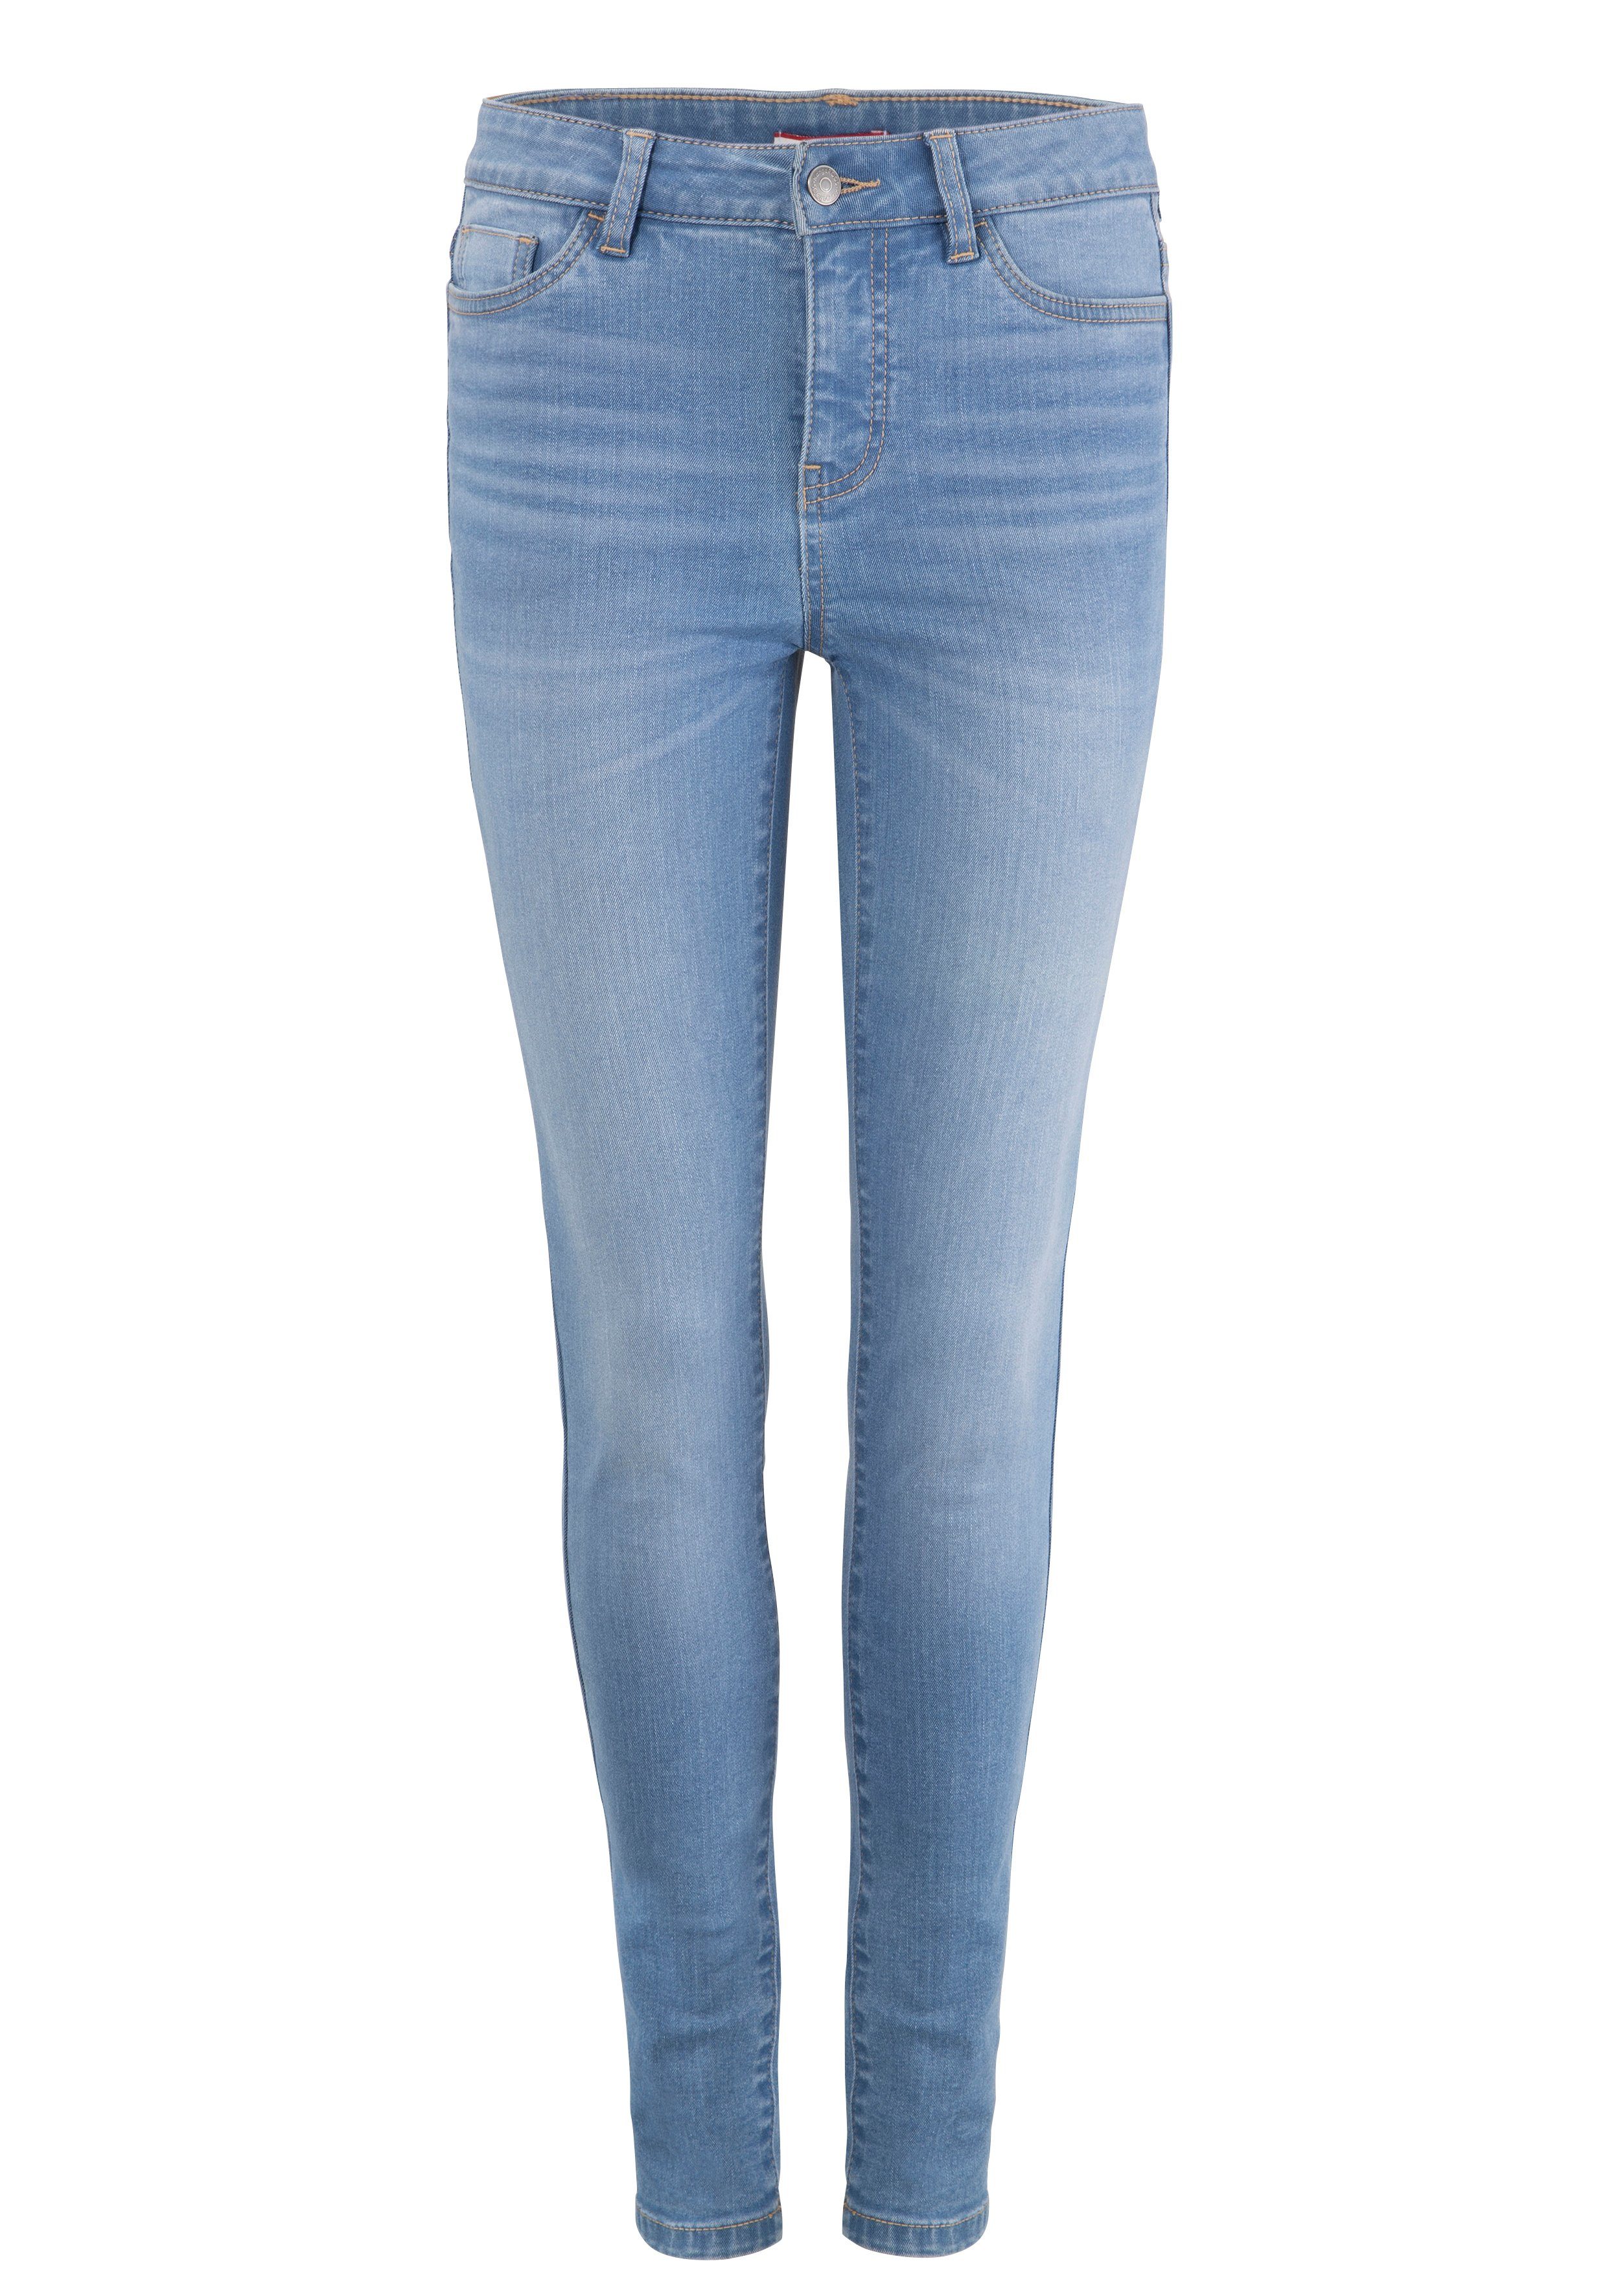 SKINNY RISE KangaROOS mit SUPER HIGH used-Effekt 5-Pocket-Jeans light-blue-used